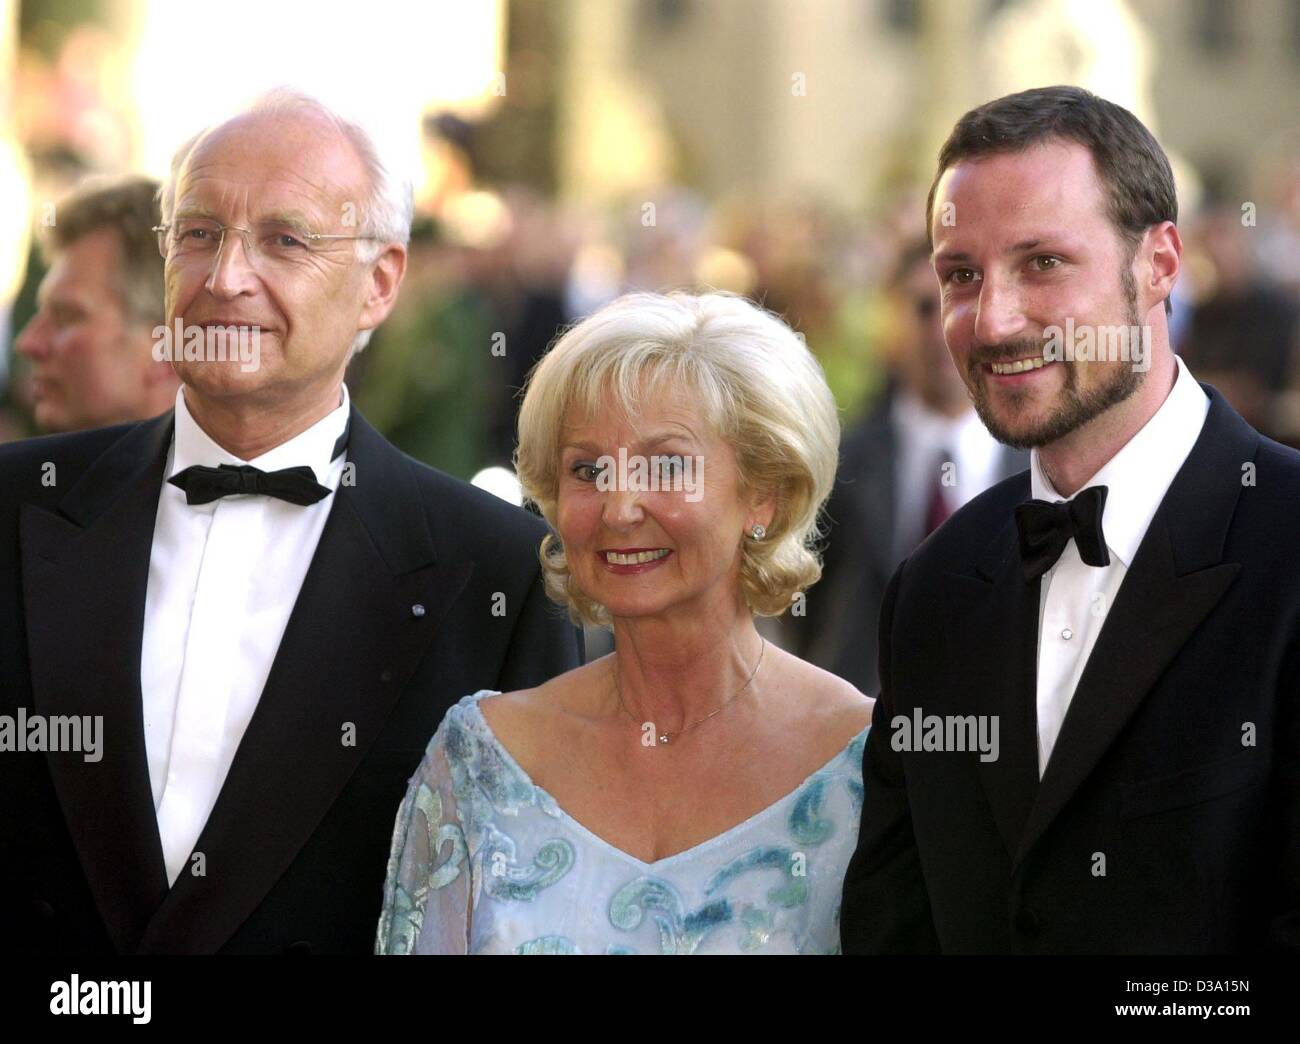 Crown prince haakon r fotografías e imágenes de alta resolución imagen